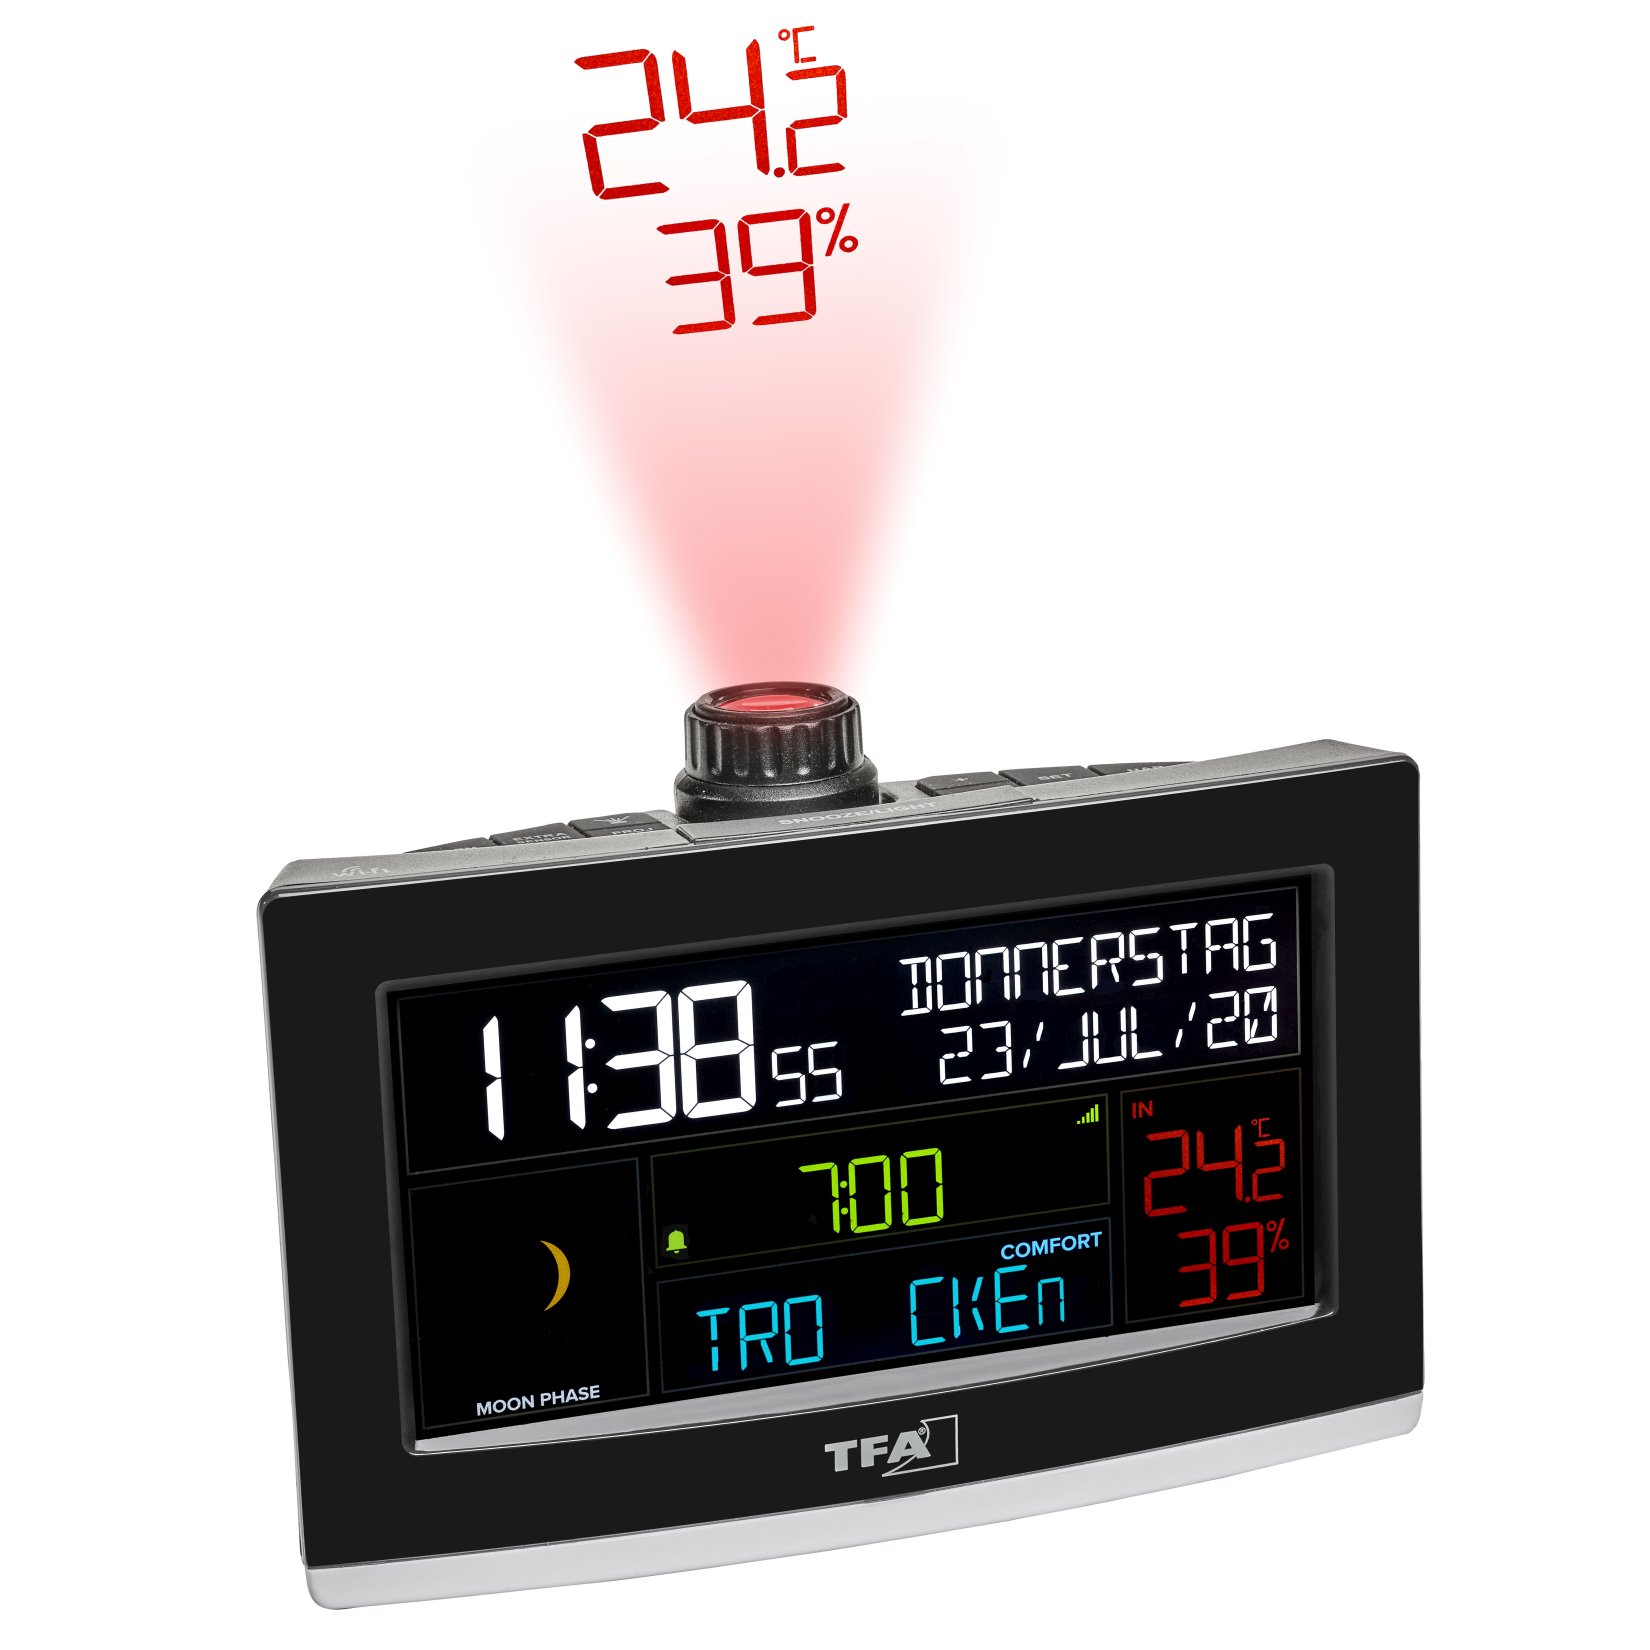 DHL LCD Digital Projektionswecker Projektionsuhr Uhr Temperatur Farbbildschirm 